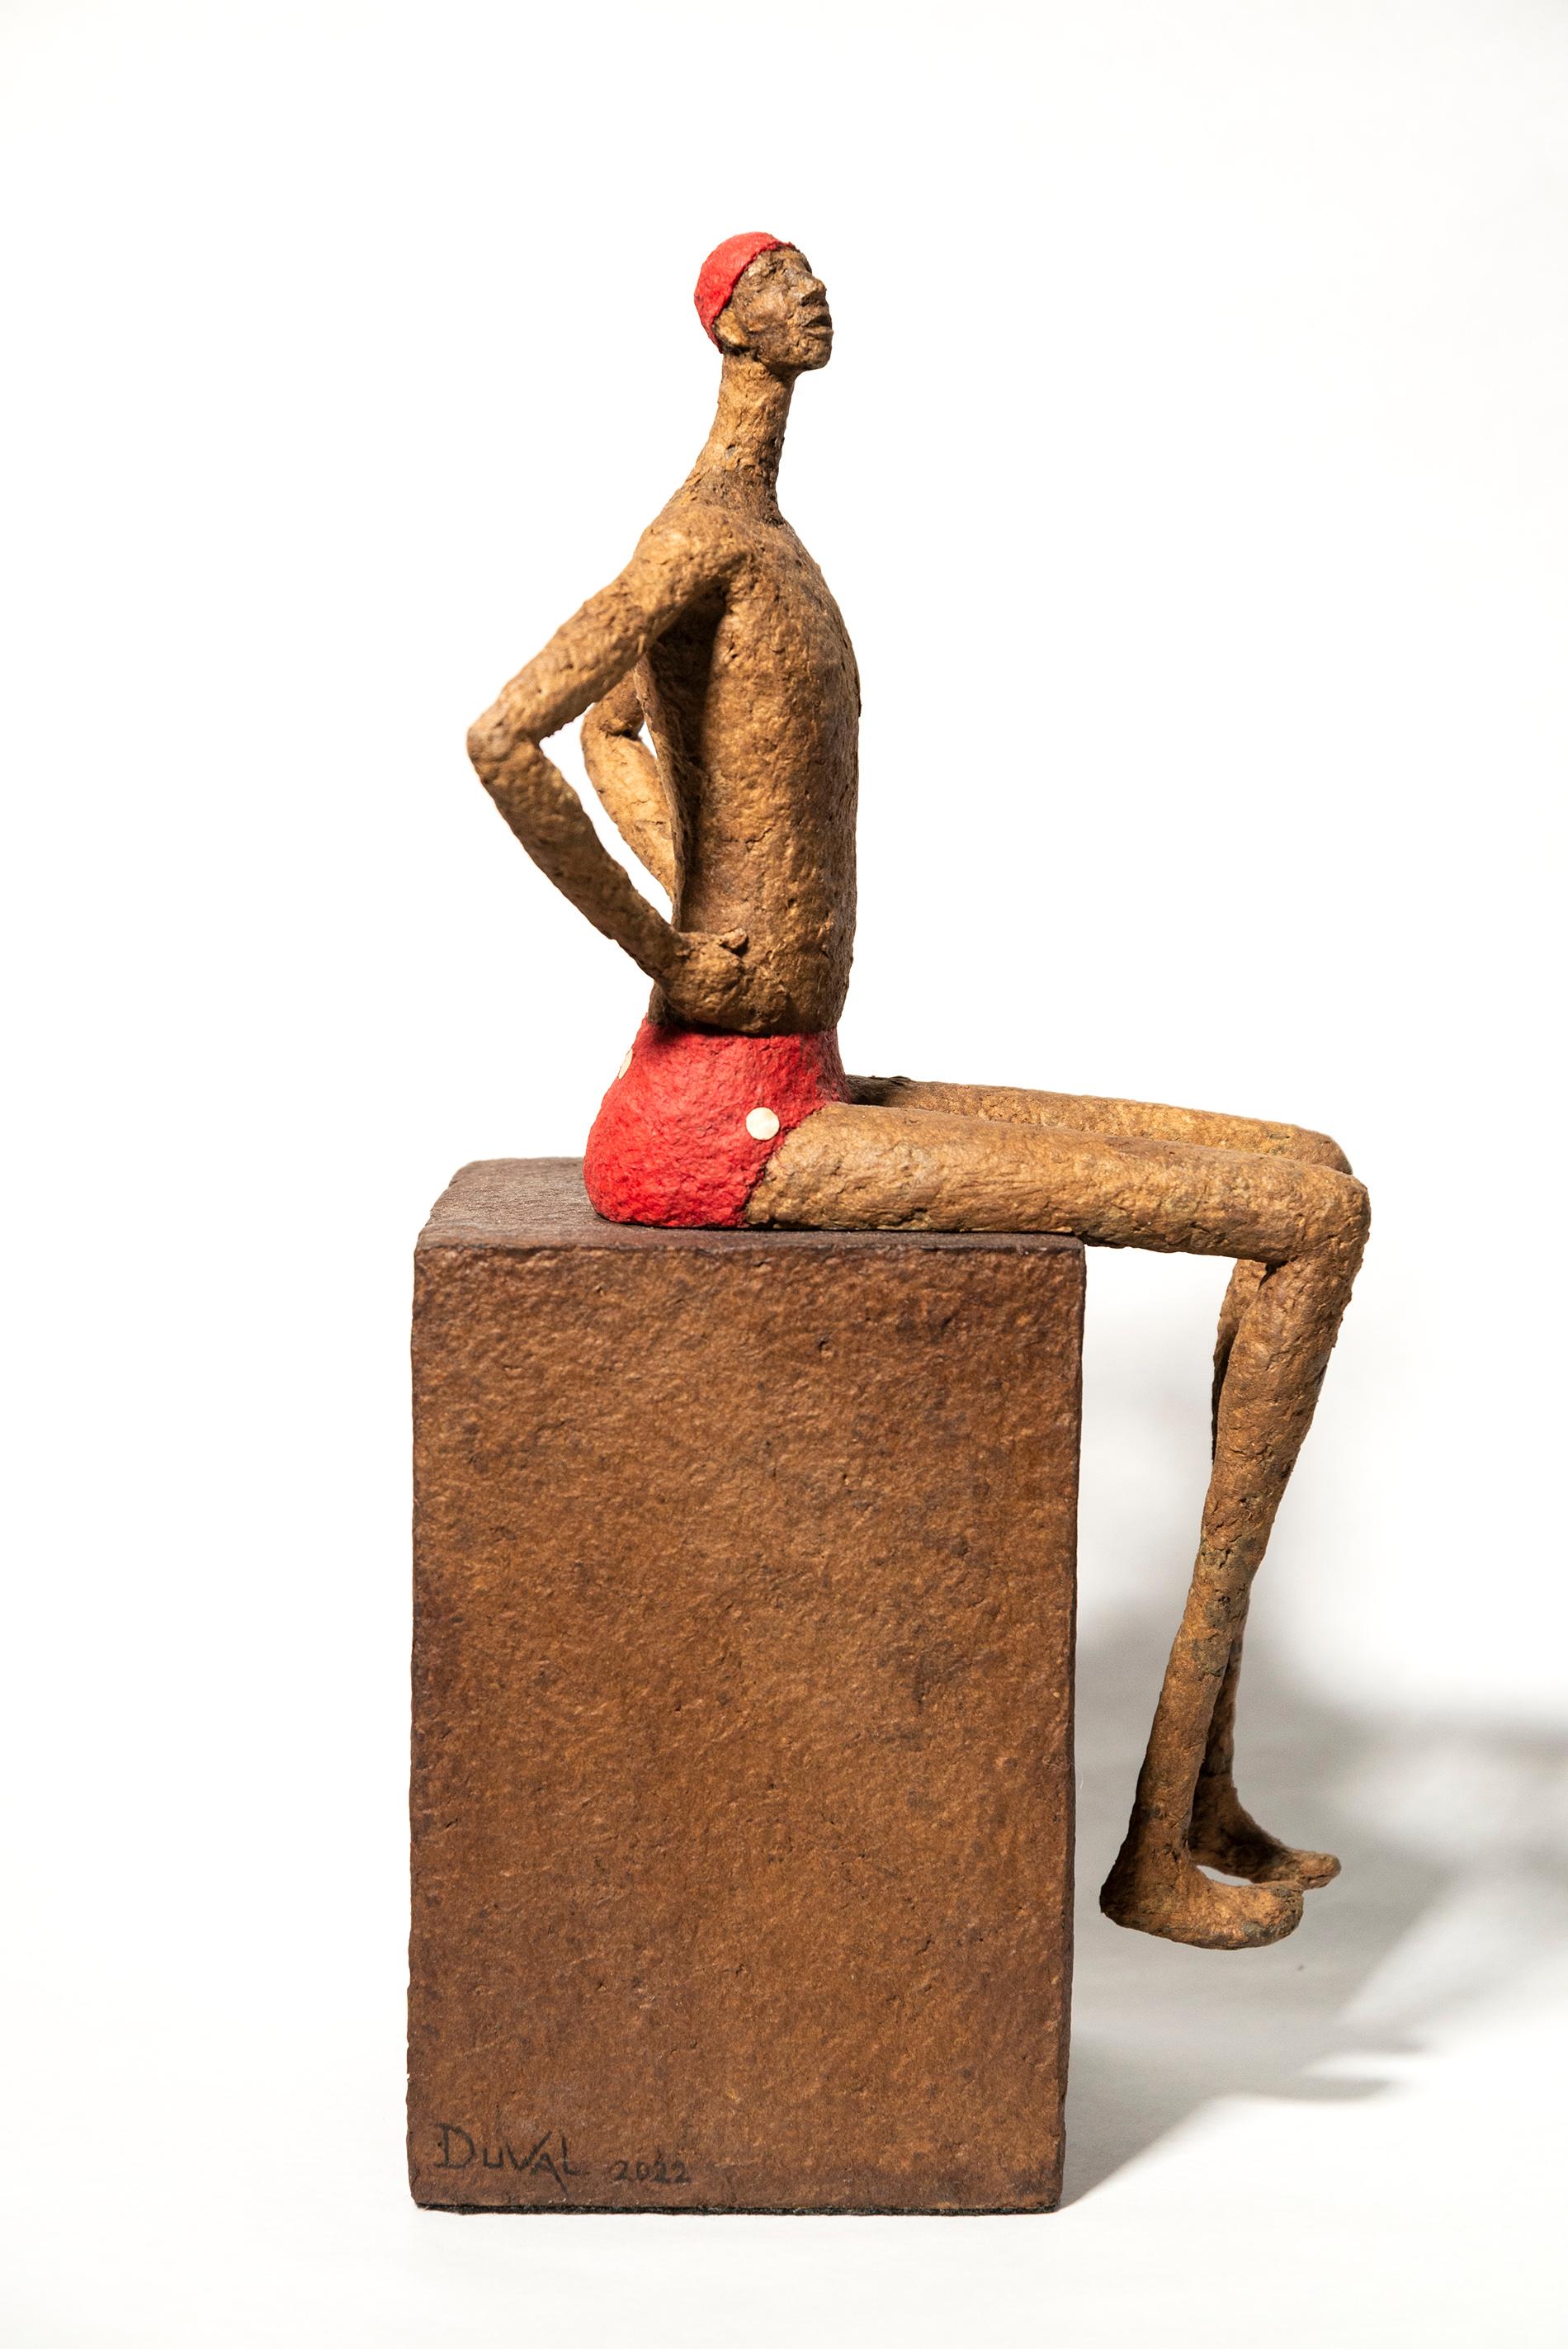 La série de petites sculptures figuratives de table de l'Artistics québécois Paul Duval capture l'essence de personnages individuels. Façonné à la main à partir de fil de fer et de papier mâché, chaque personnage est unique. Ici, il s'agit d'un